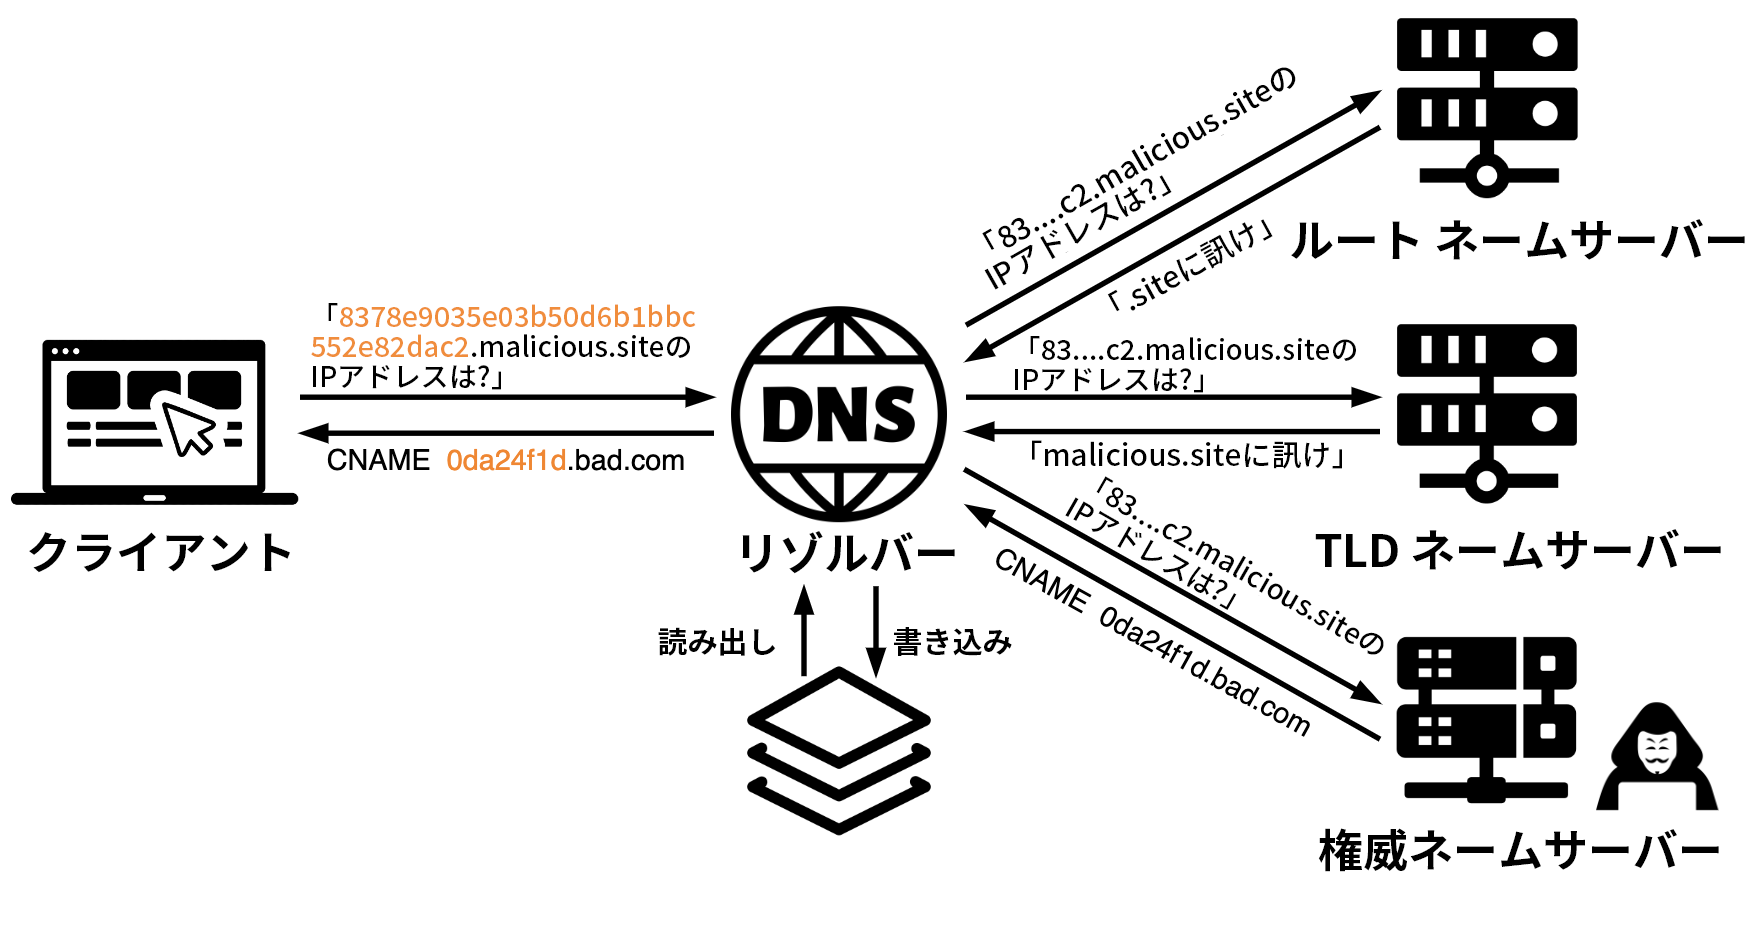 図 1 は、DNS トンネリングによるデータの漏出と潜入の仕組みを示した図です。クライアント サーバーは DNS リゾルバーと通信します。キャッシュからの読み取り/書き込みがアイコンで示されています。DNS リゾルバーはルート ネーム サーバー、トップ レベル ドメイン ネーム サーバー、権威ネーム サーバーへと再帰的にアドレスの問い合わせをしています。 